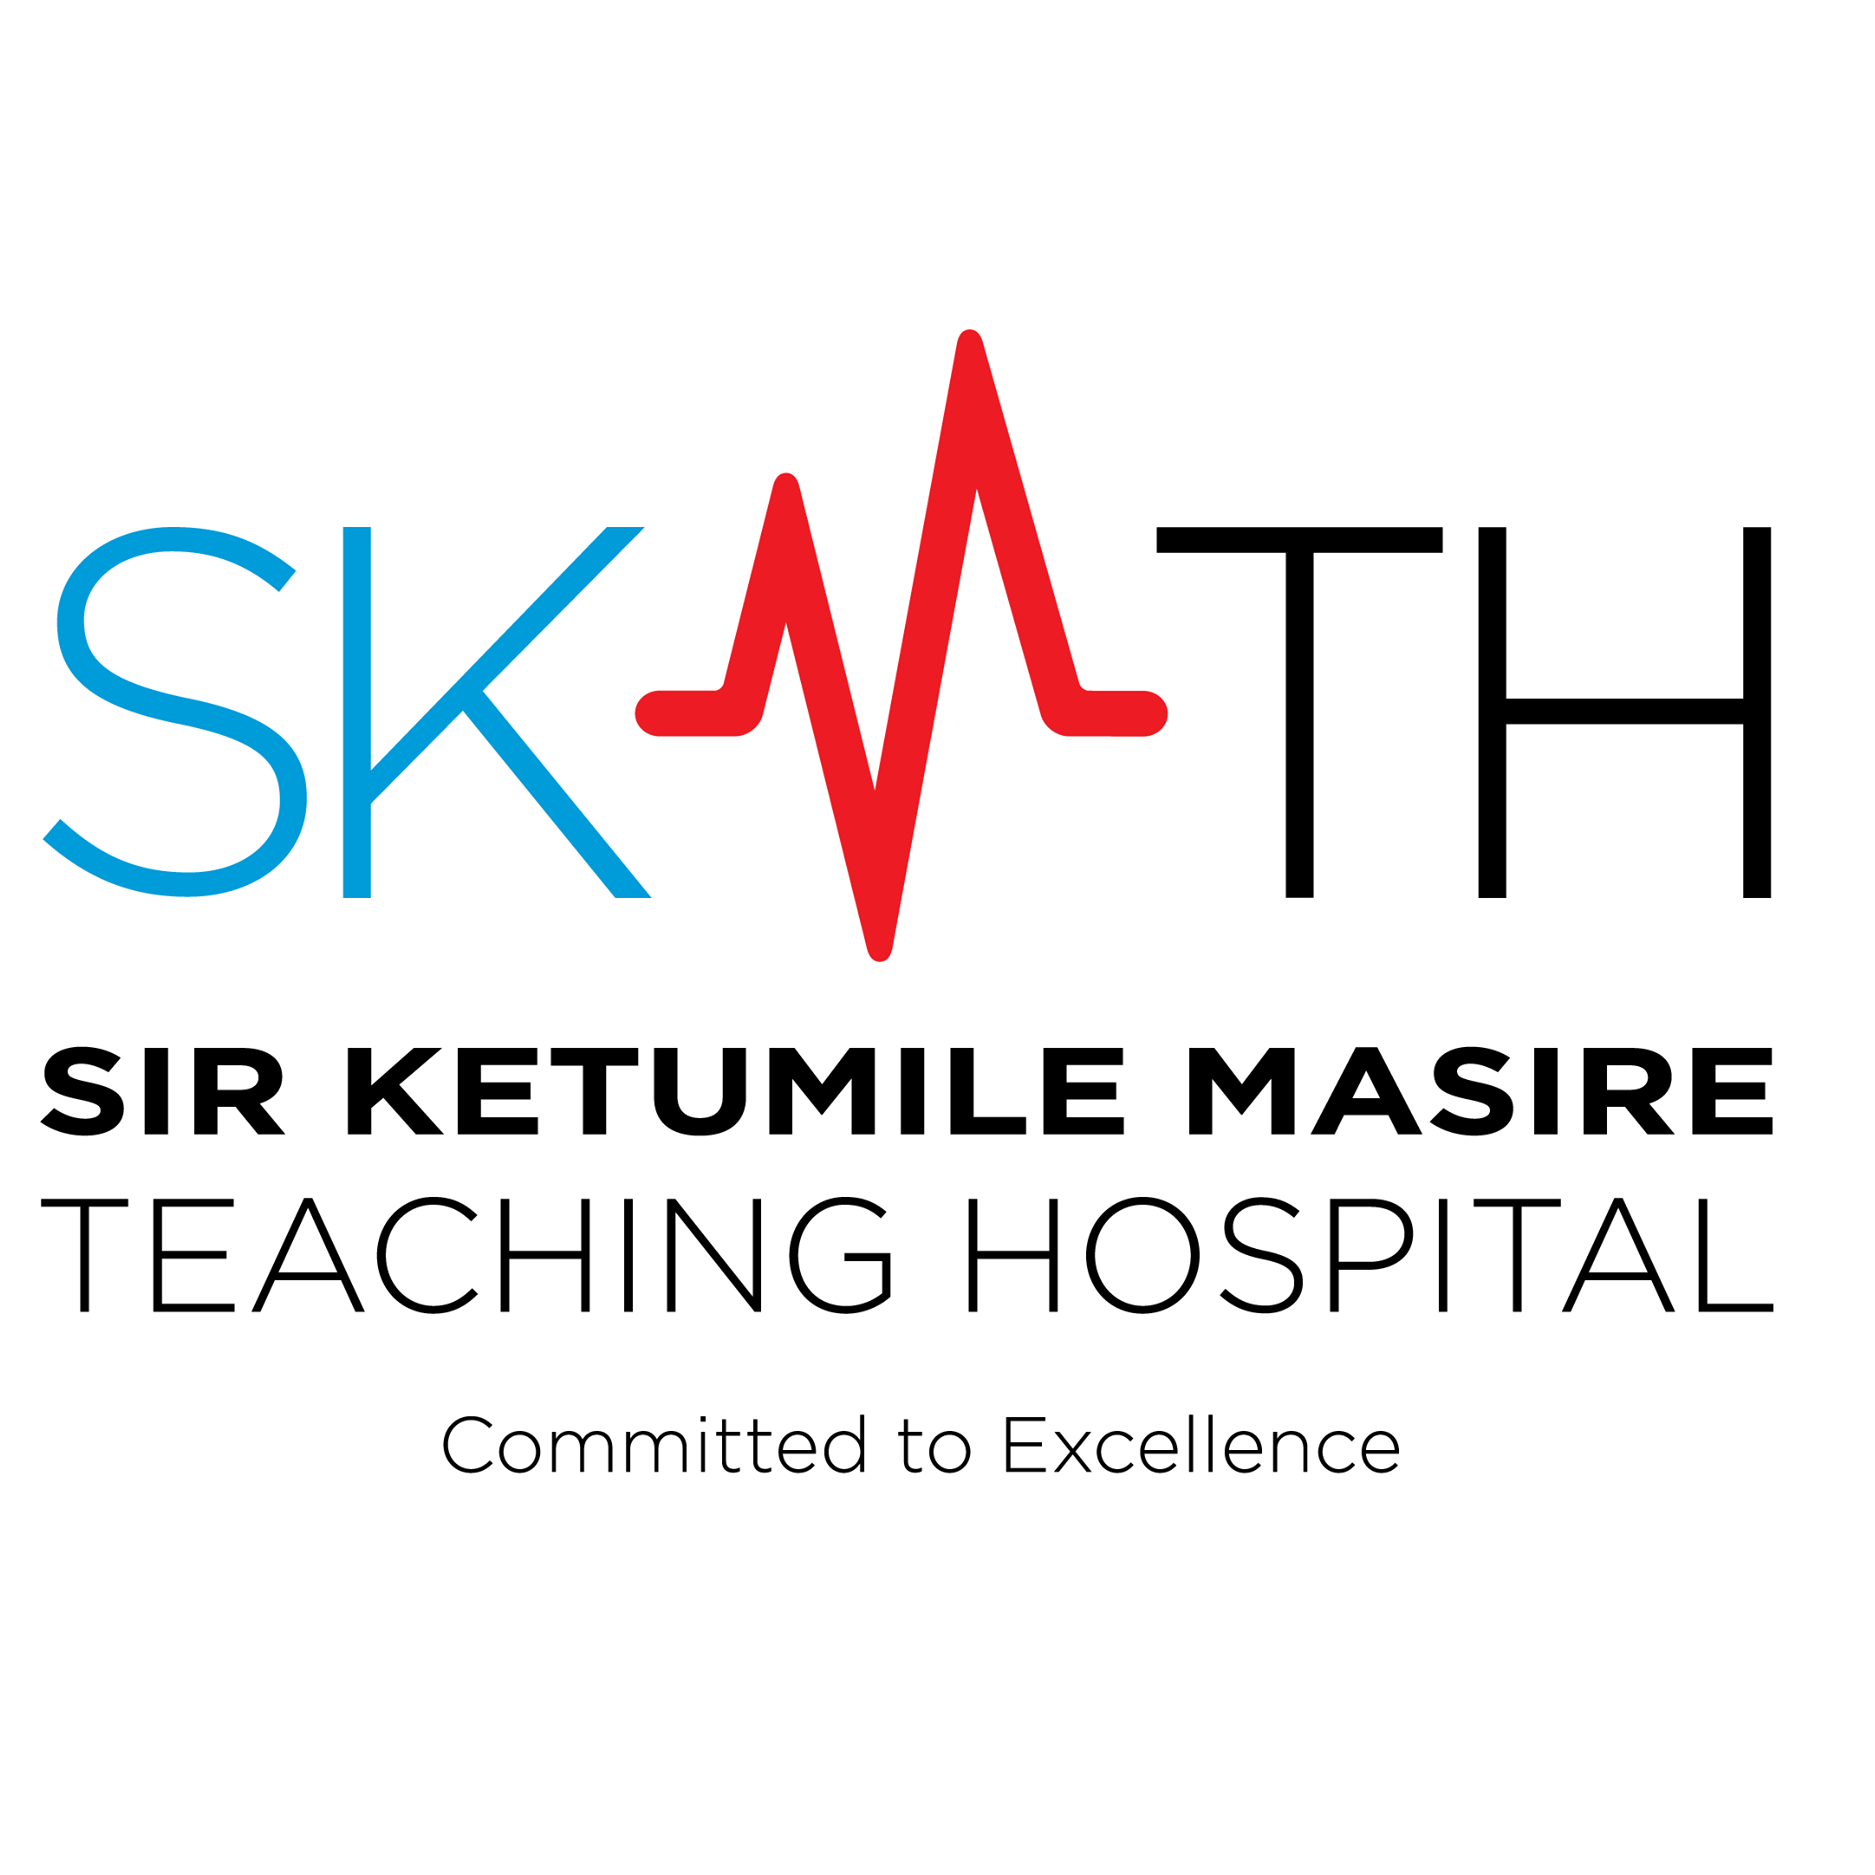 Sir Ketumile Masire Teaching Hospital